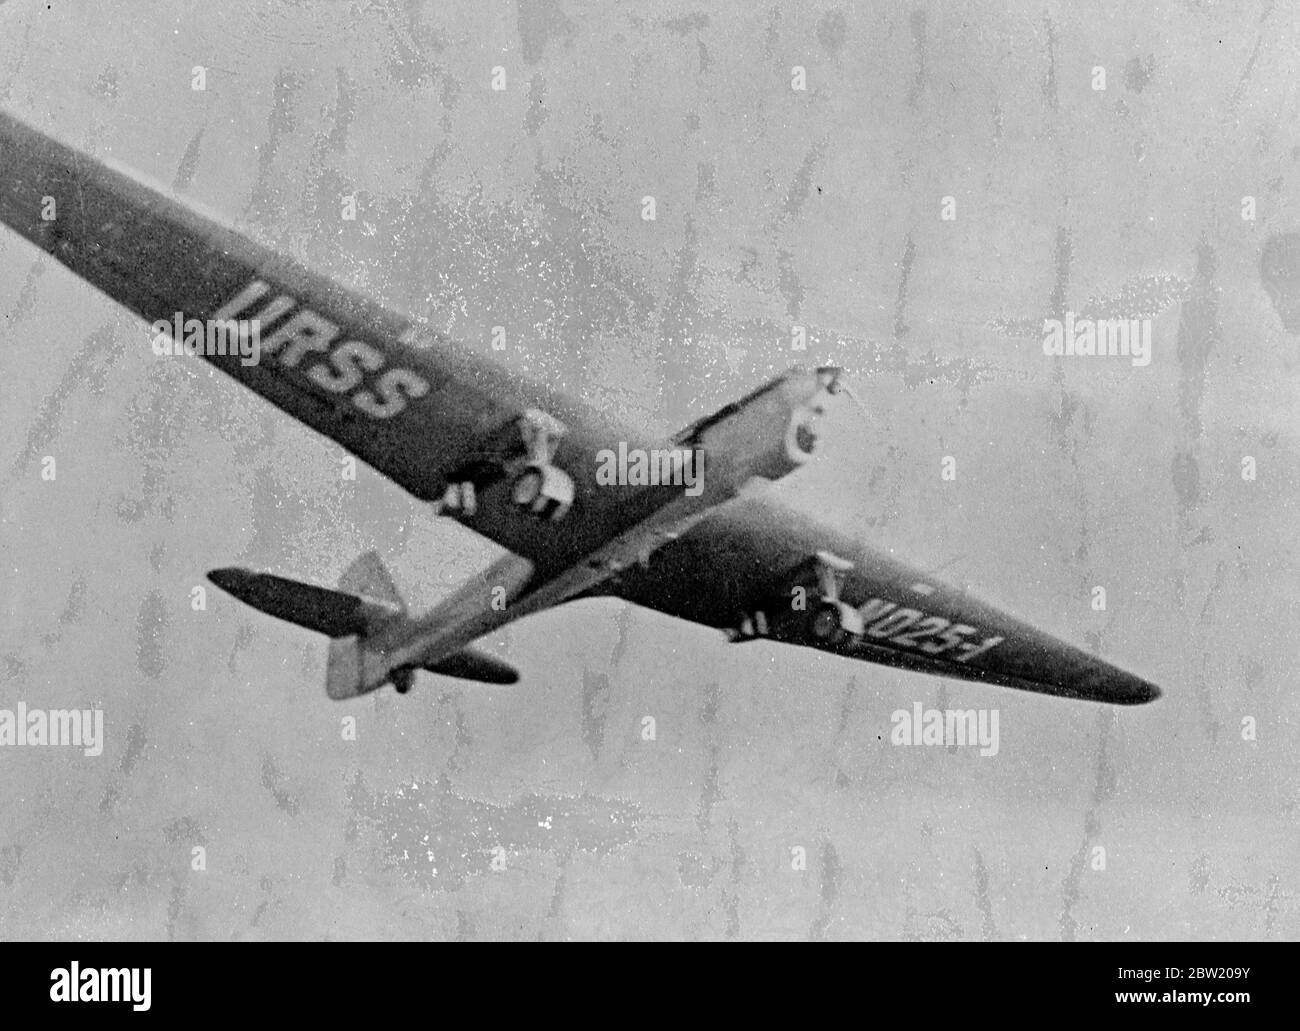 L'avion record ANT-25-1 dans les airs après le décollage à Moscou. Trois aviateurs soviétiques Mikhall M. Gromov, le major A.B.Yumaschev, et l'ingénieur S.A Danilin, qui ont pris le départ de l'aérodrome de Shchelkovo près de Moscou, ont atterri près de San Jacinto à 70 miles à l'est de Los Angeles après un vol au-dessus du pôle Nord pour briser le record mondial de longue distance. Les Russes ont volé 6625 miles en 61 heures sept minutes presque 1000 miles de mieux que le précédent record établi par Codos et Rossi. 15 juillet 1937 Banque D'Images